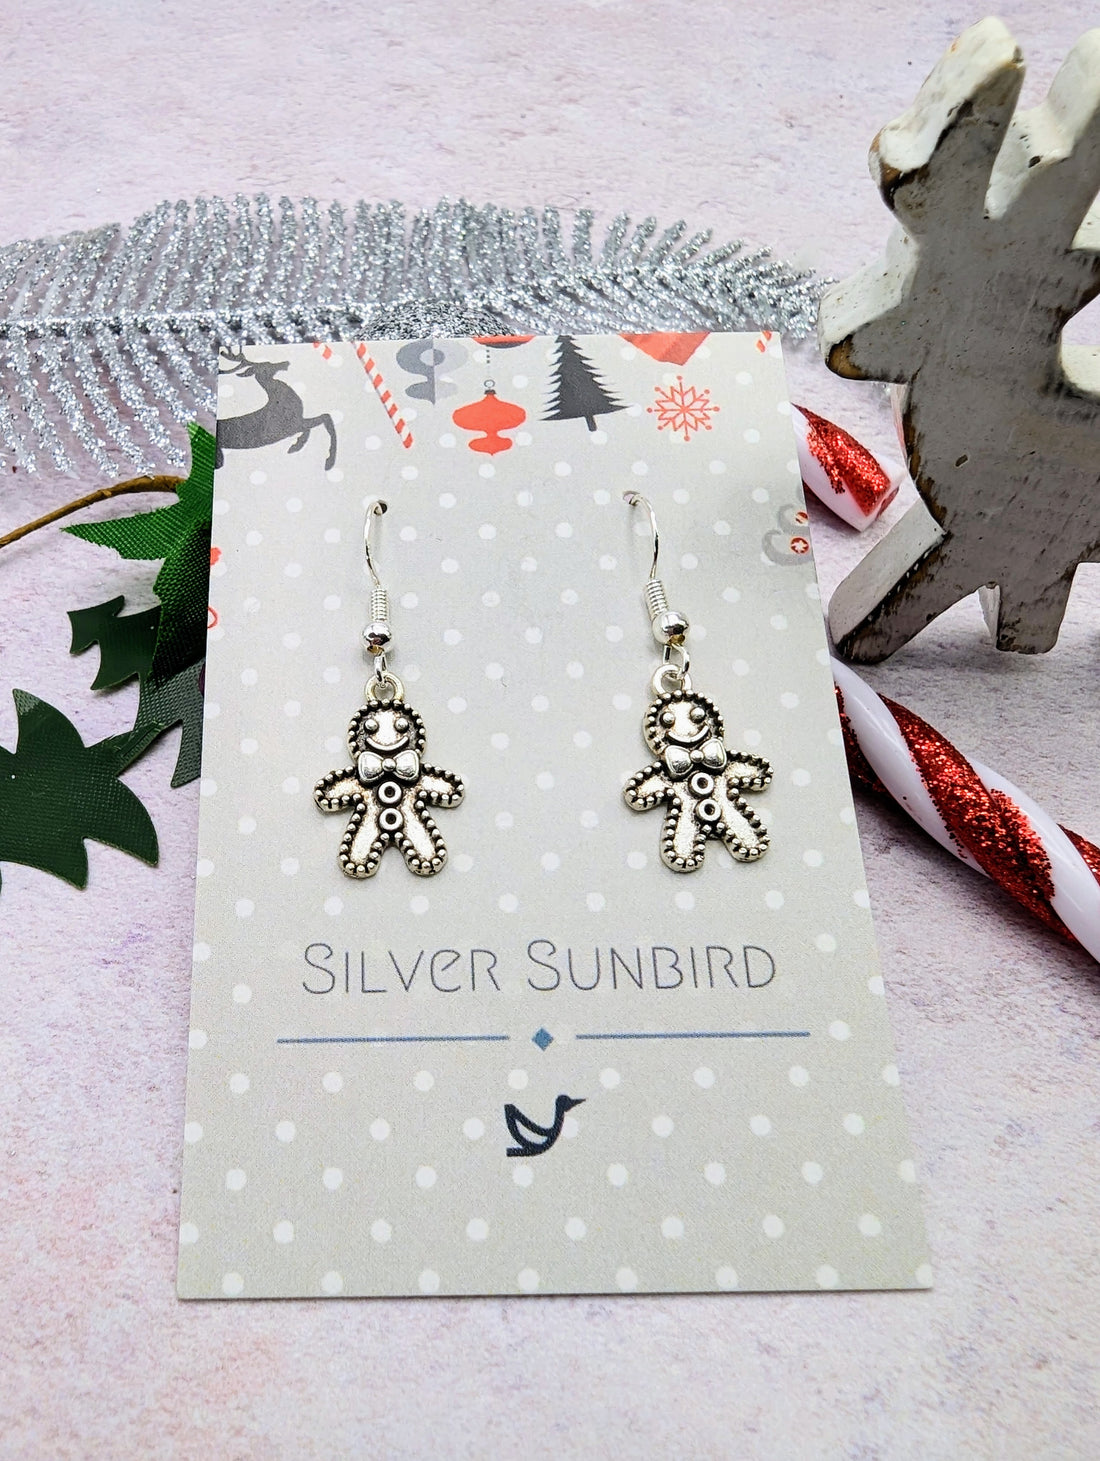 Jolly Gingerbread Men Earrings - Silver Sunbird Christmas Earrings